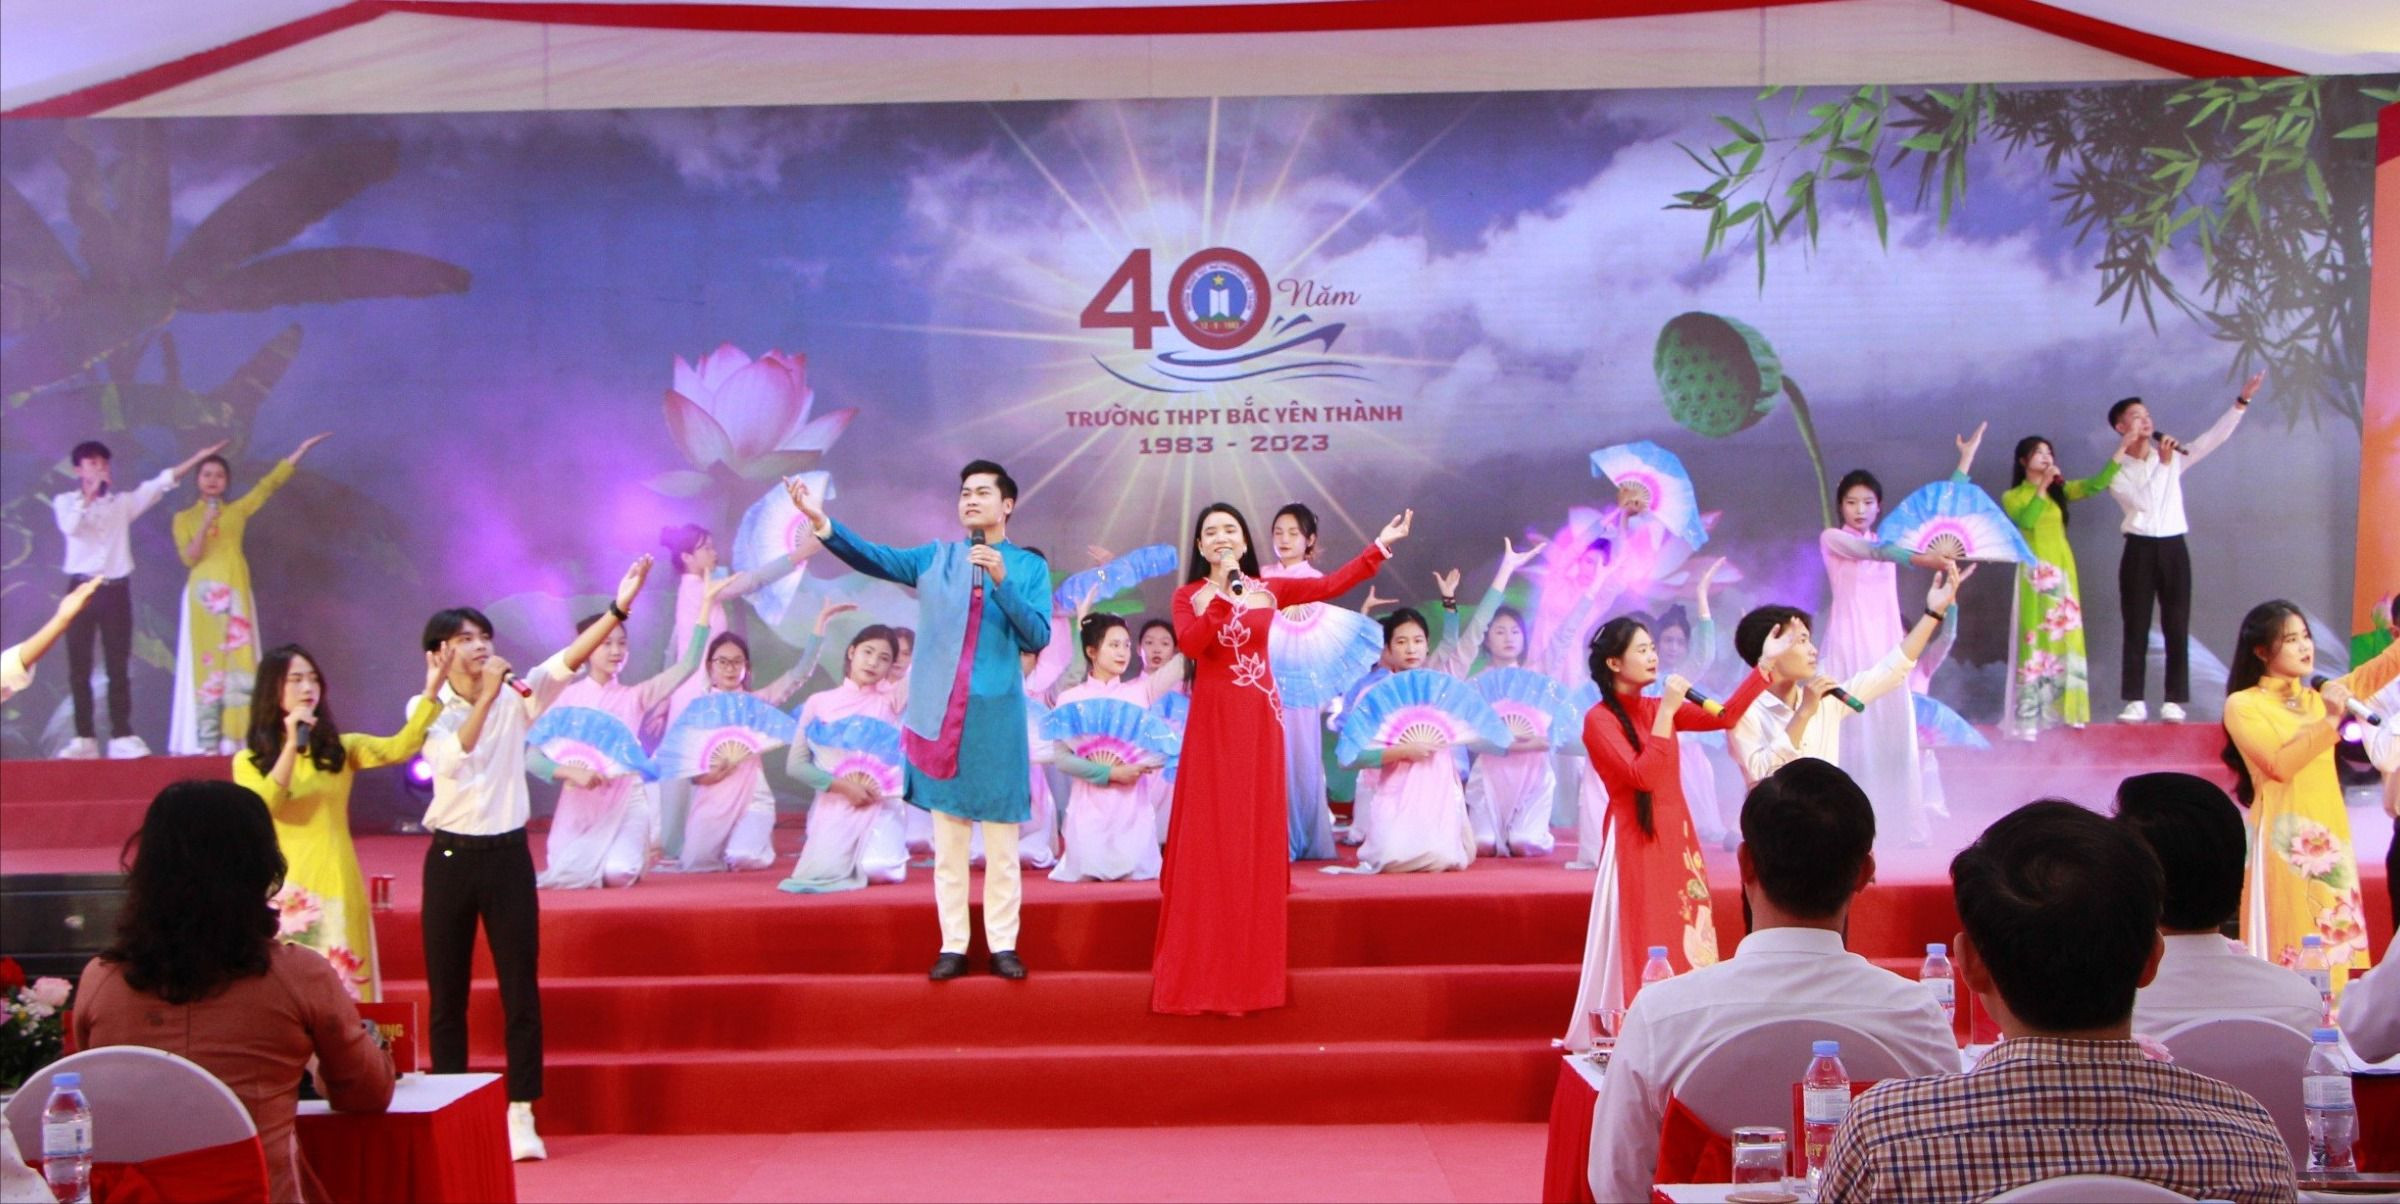 bna_Chương trình văn nghệ chào mừng lễ kỷ niệm của giáo viên và học sinh Trường THPT Bắc Yên Thành.jpg